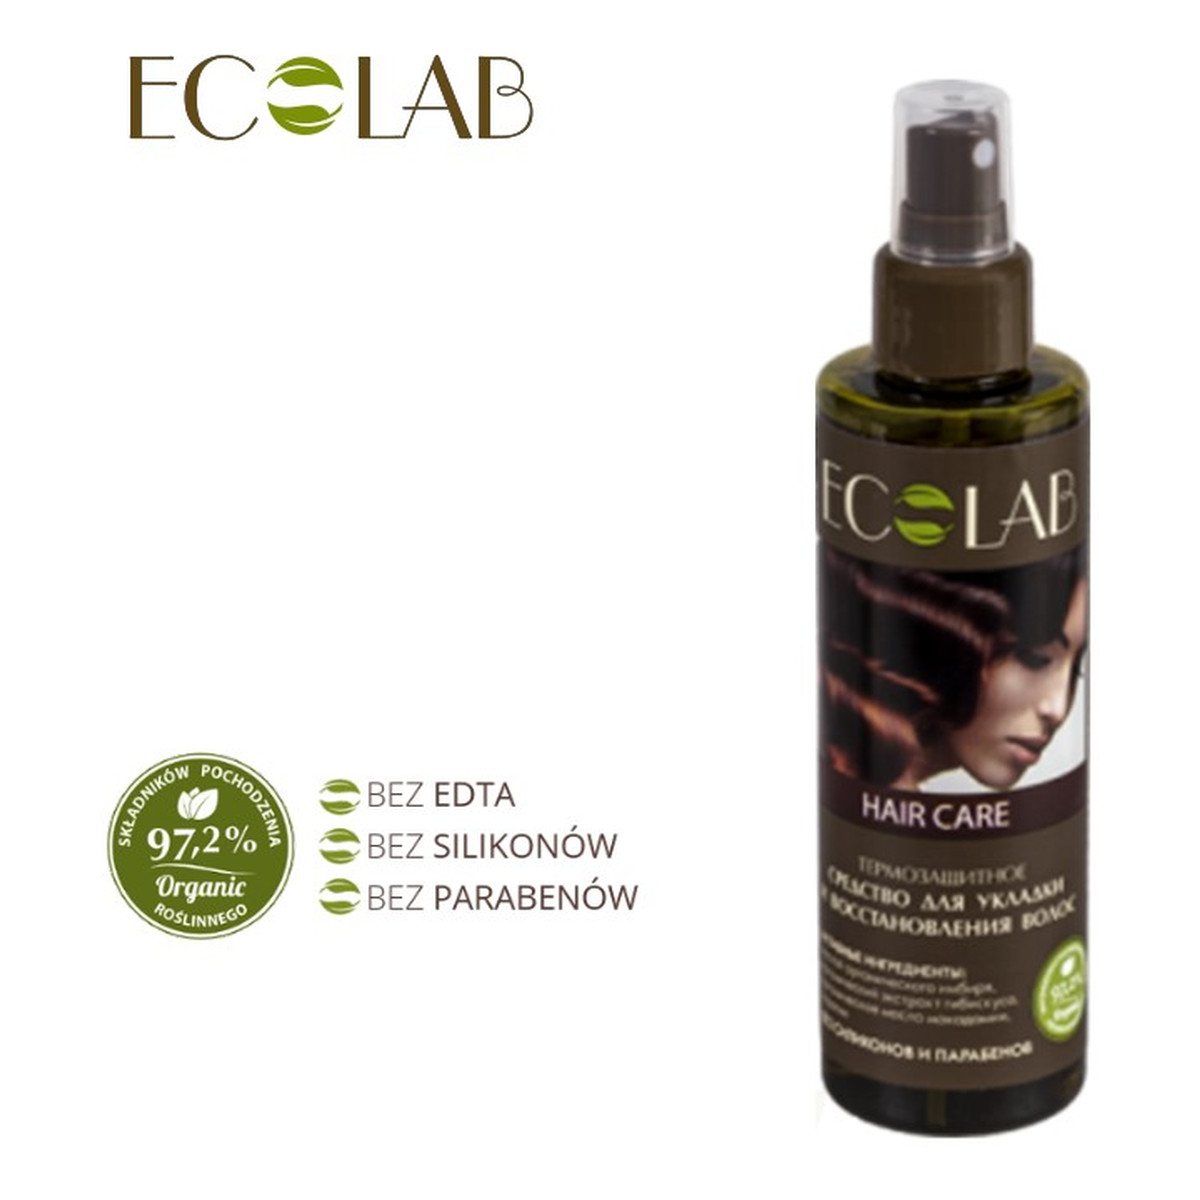 Ecolab Ec Laboratorie Termoaktywny Spray do Układania i Regeneracji Włosów 200ml